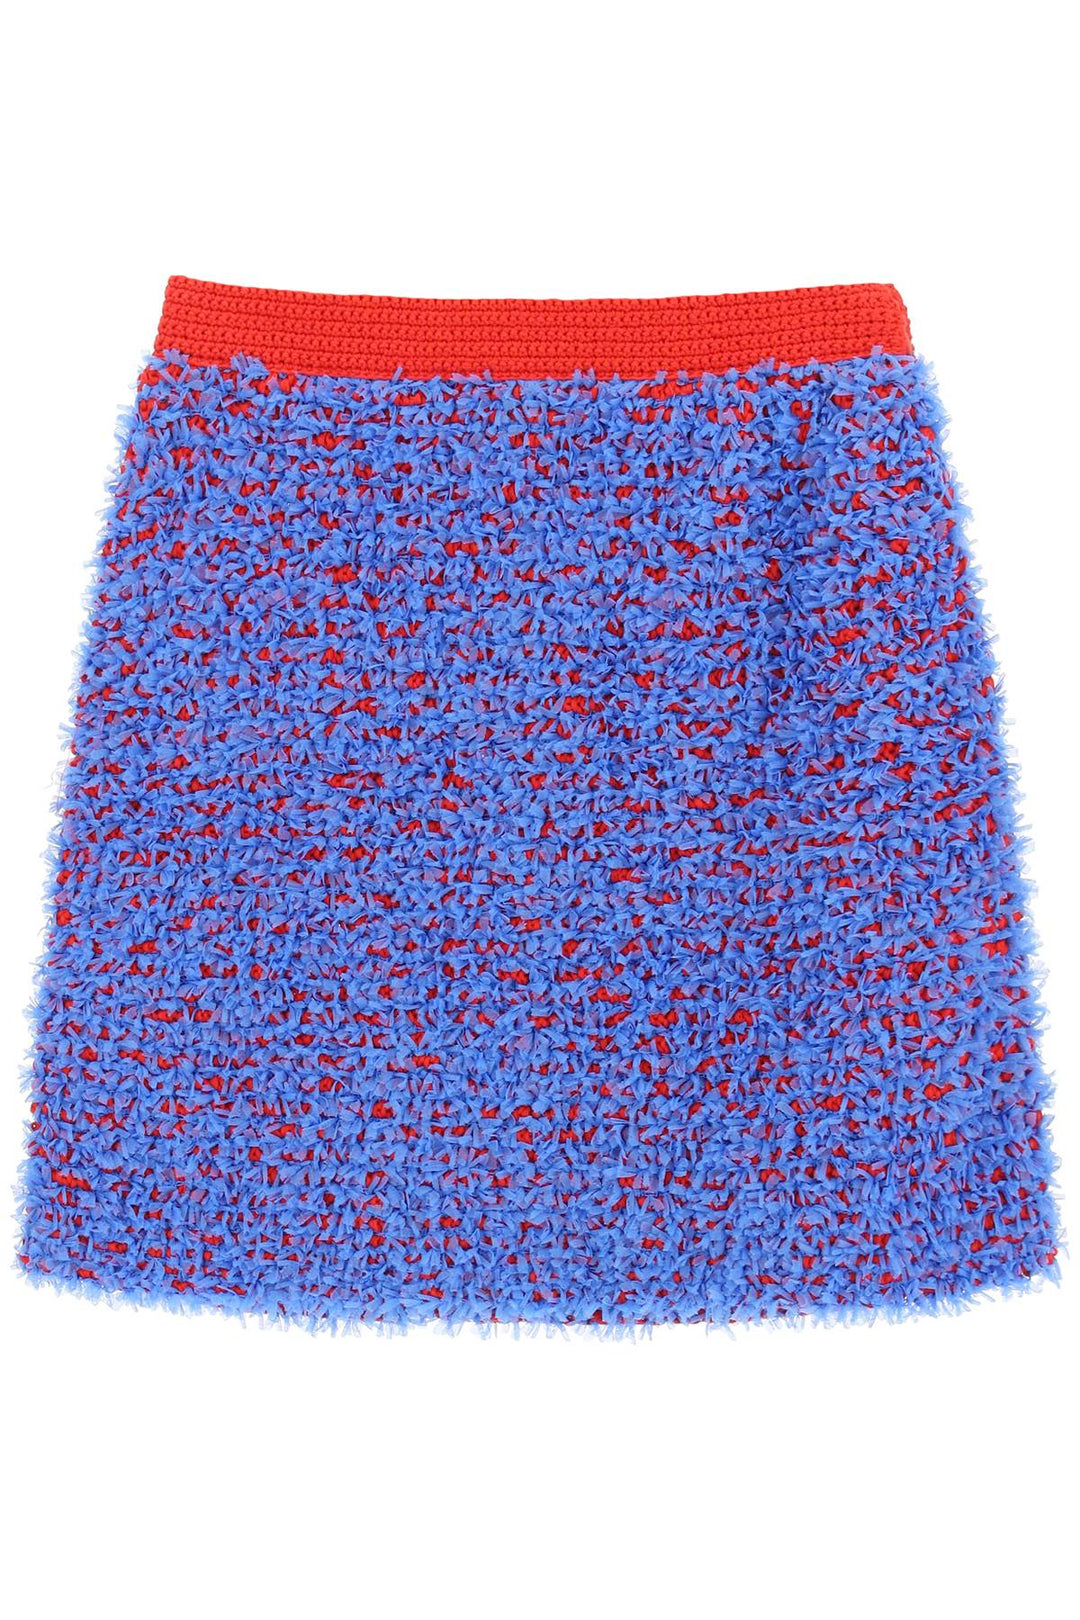 Tory burch confetti tweed mini skirt-0